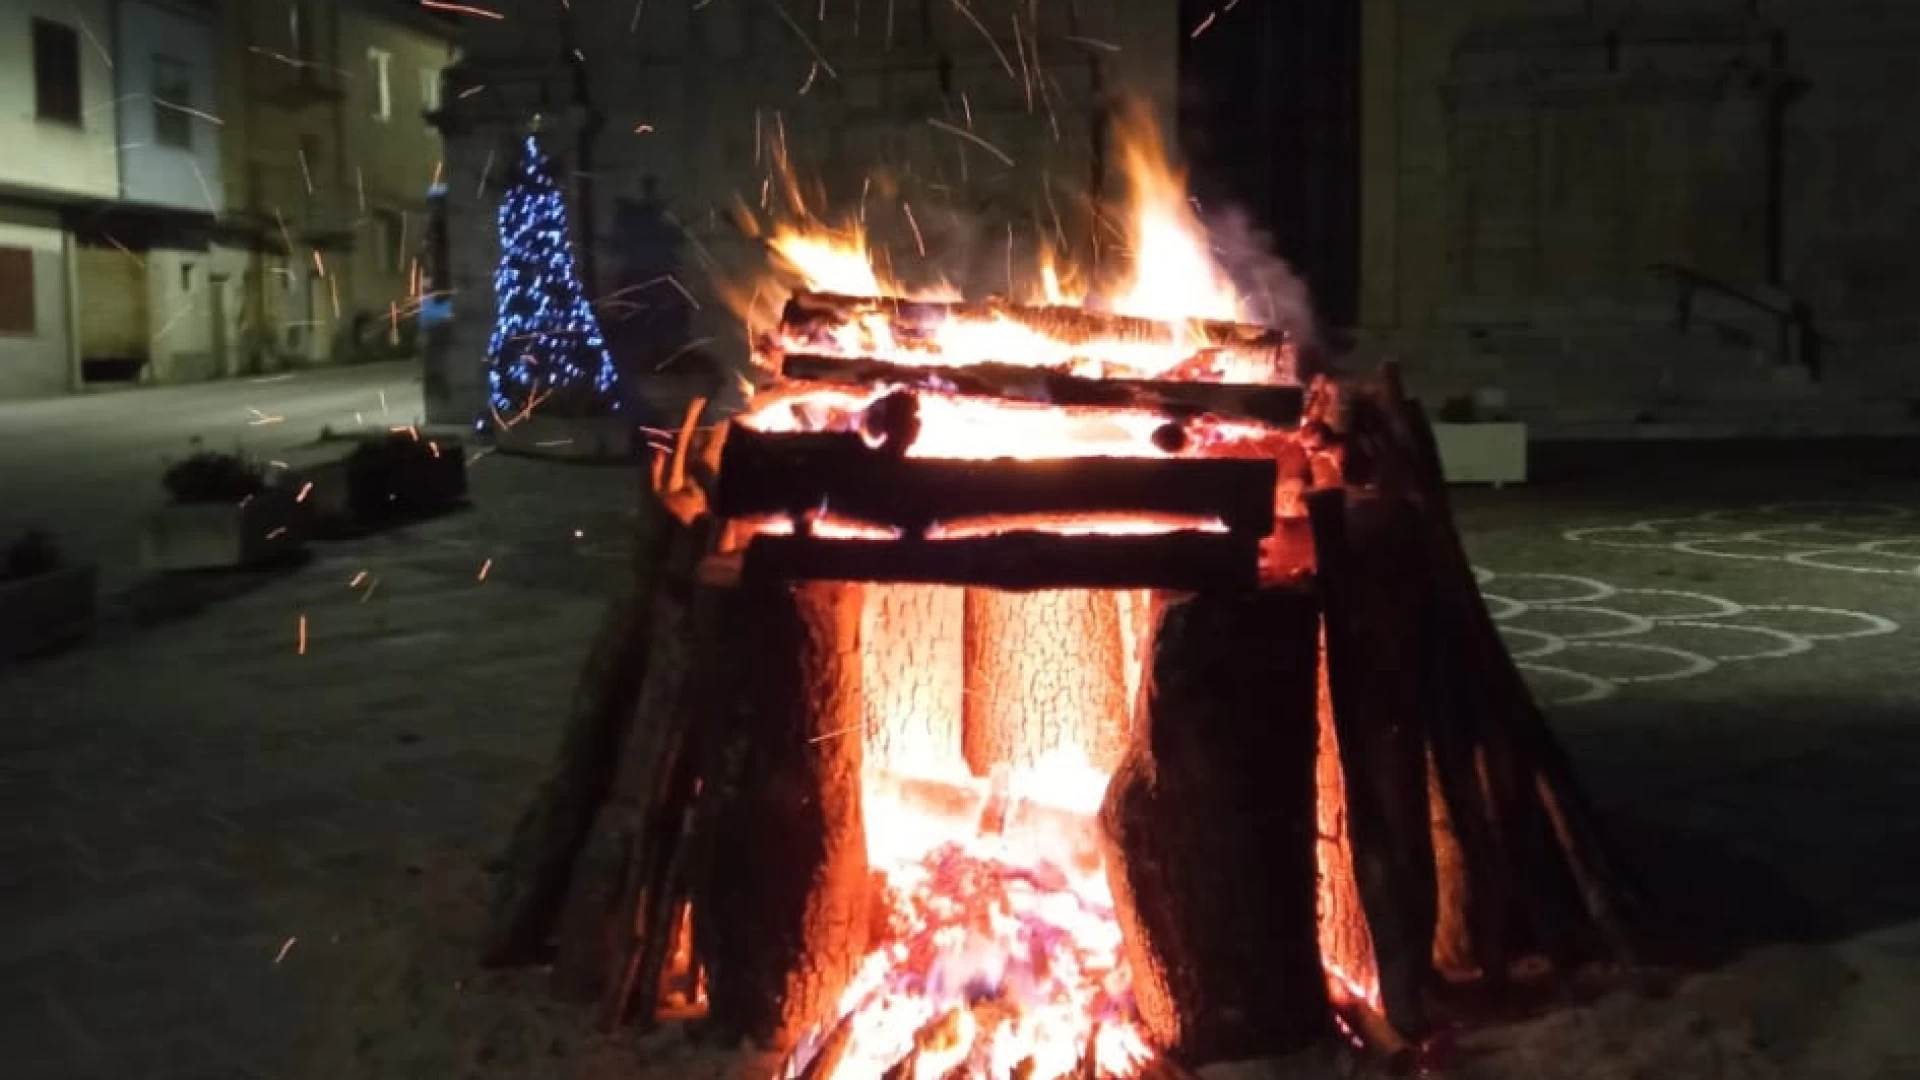 Il Dominio Collettivo di Cerasuolo propone diversi eventi natalizia. Il 24 dicembre dalle ore 21 tradizionale falo’ in piazza.